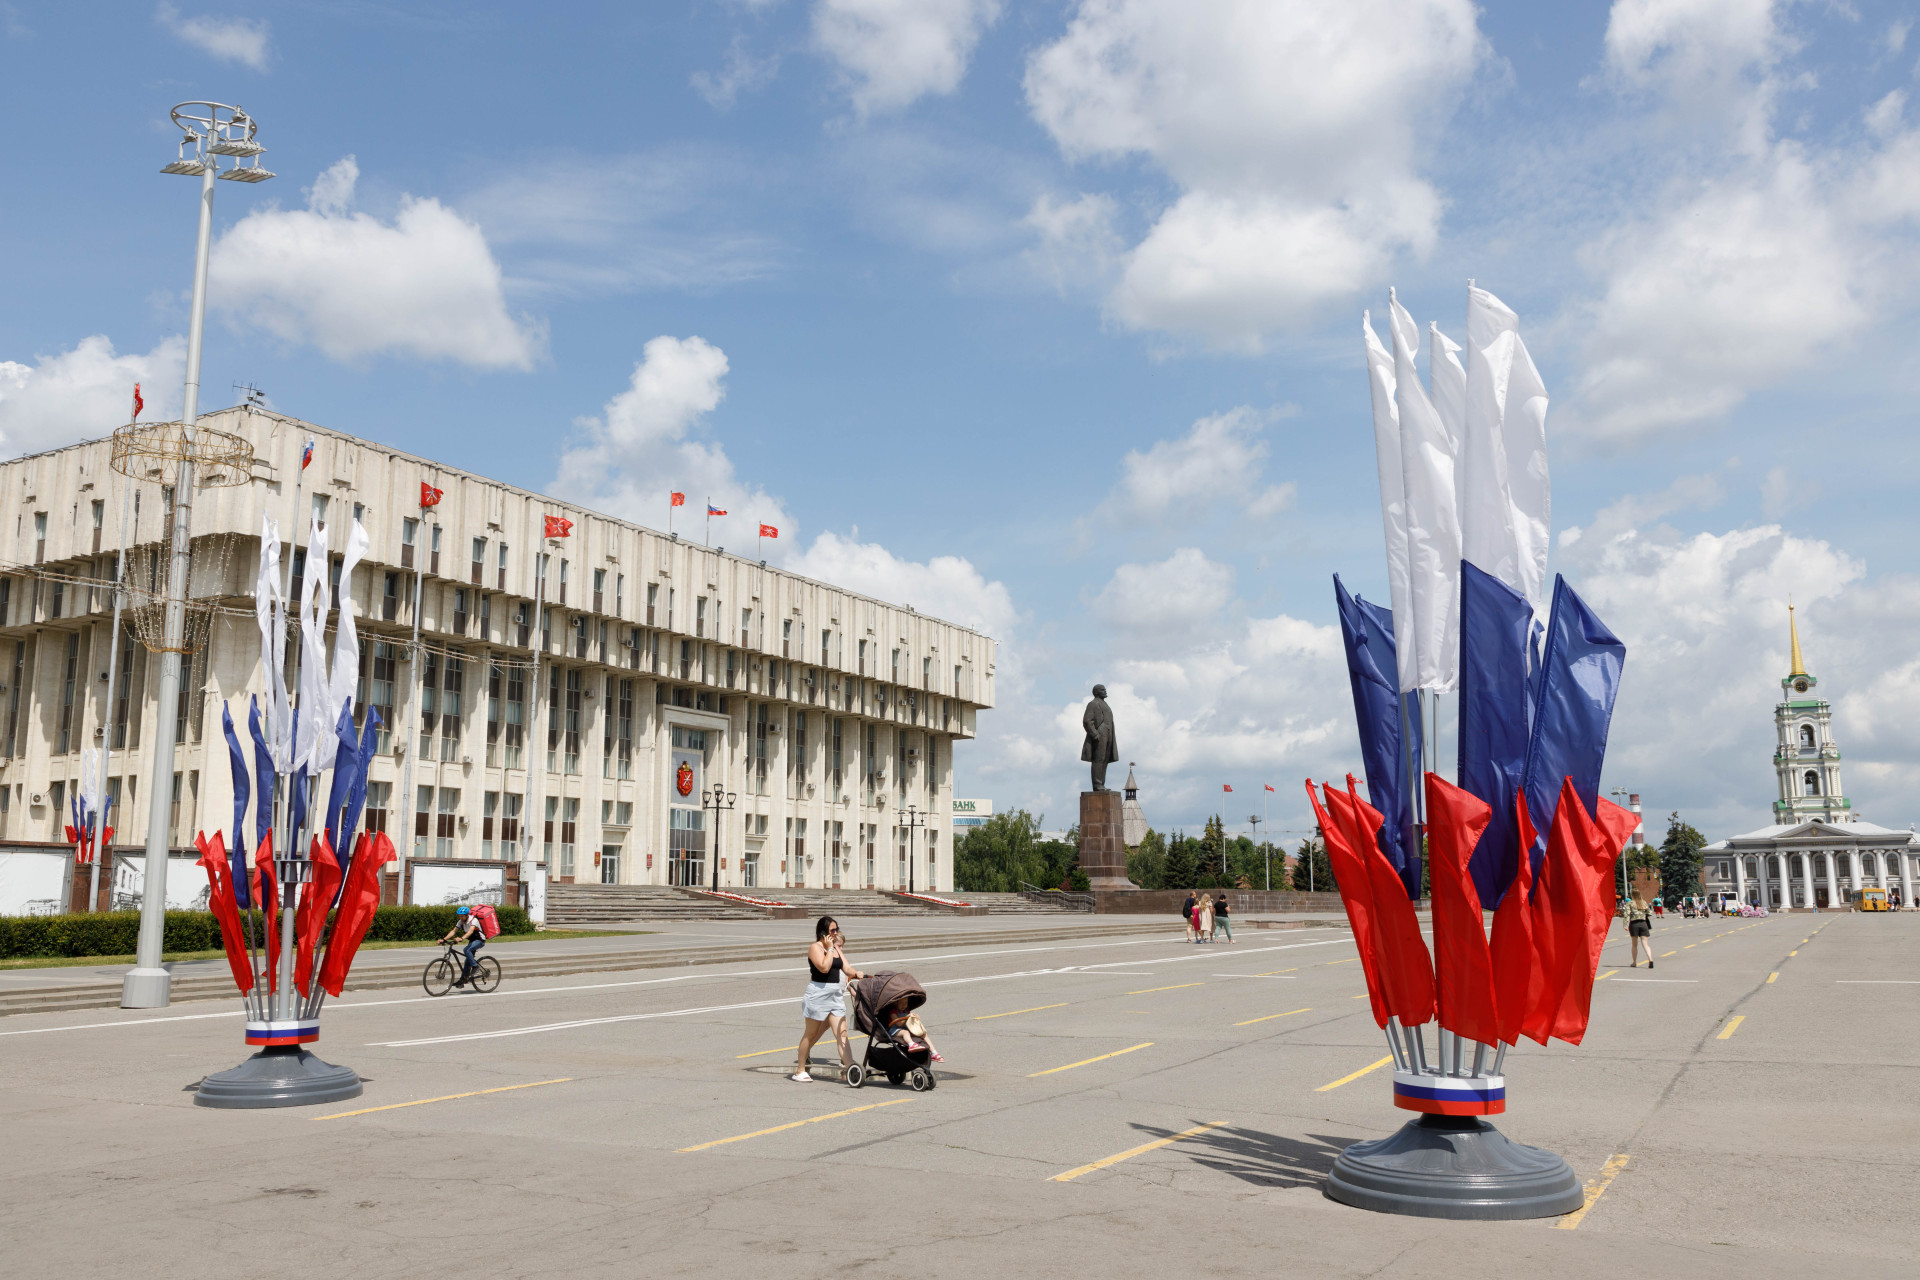 На площади Ленина в Туле отремонтируют дорожное покрытие за 52,7 миллиона рублей